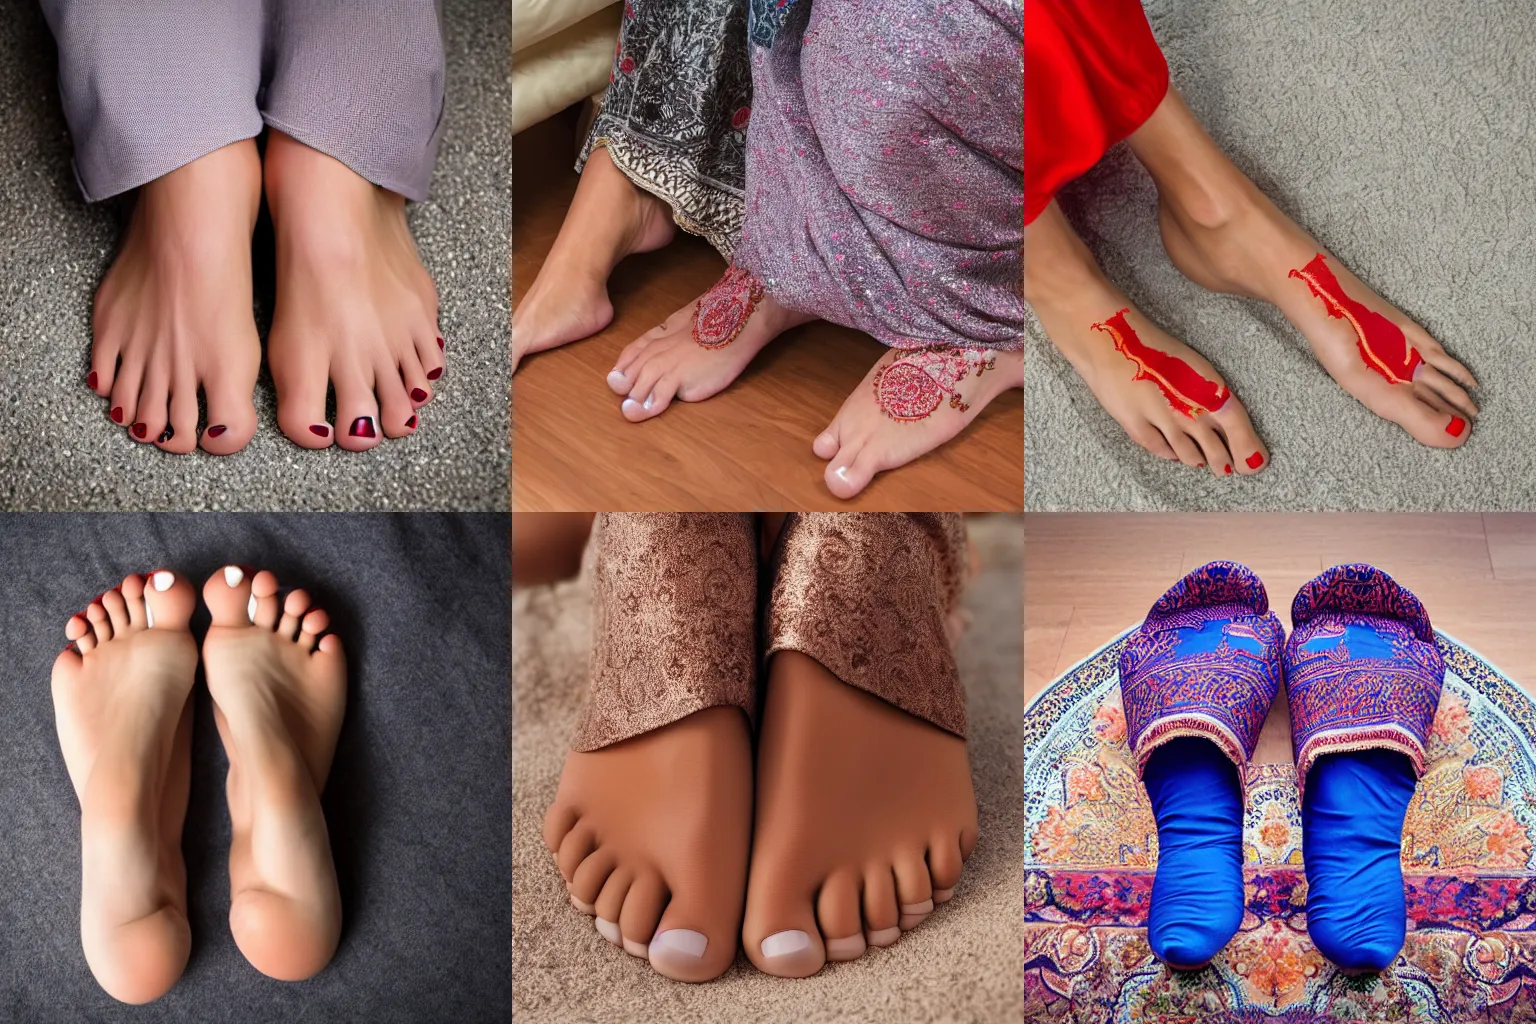 Halal feet pics. 4k., Stable Diffusion